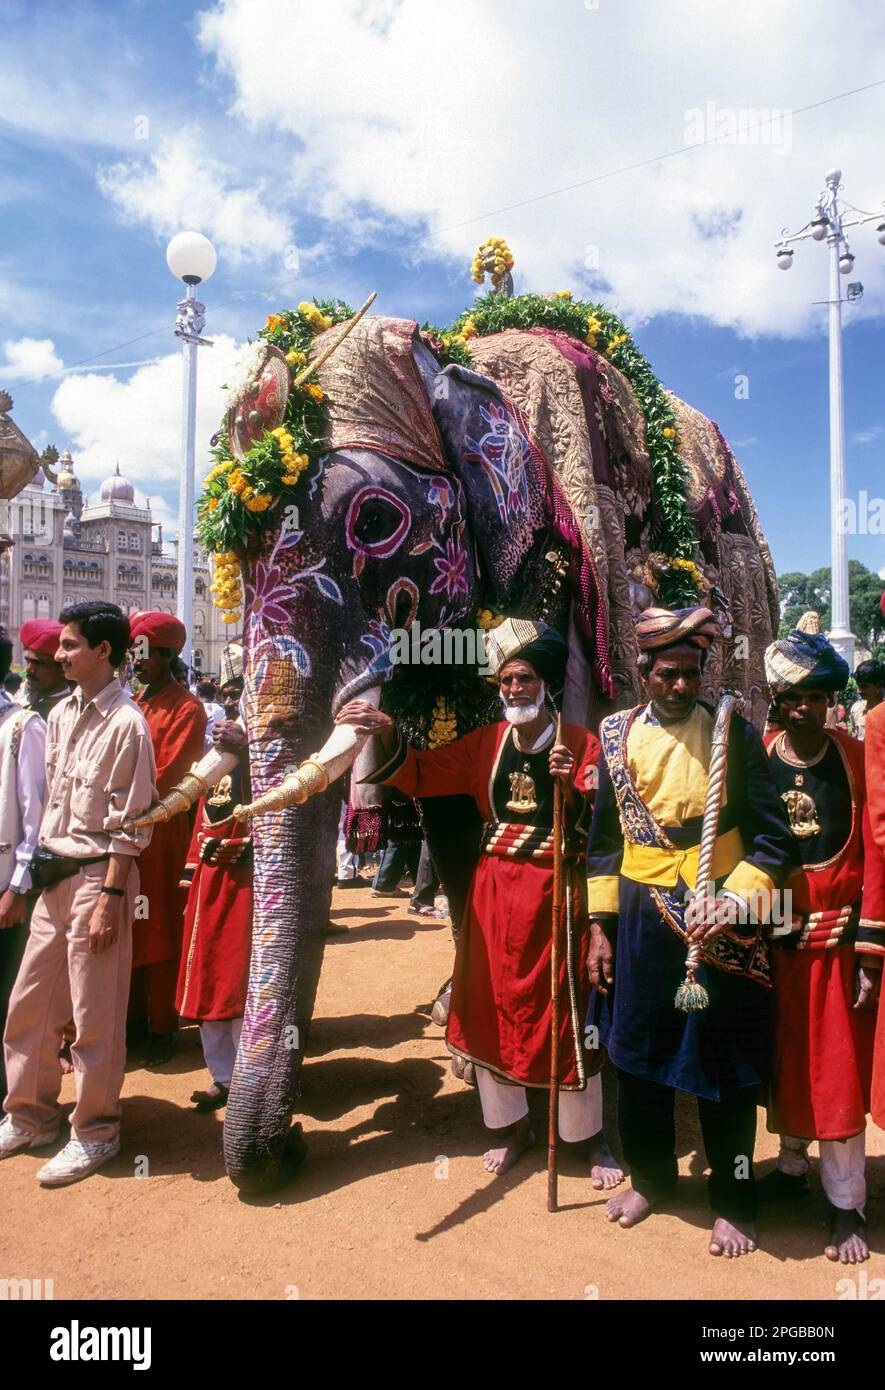 Caparisoned and Painted Elephant; Dussera dusera Festival at Mysore, Karnataka, India Stock Photo